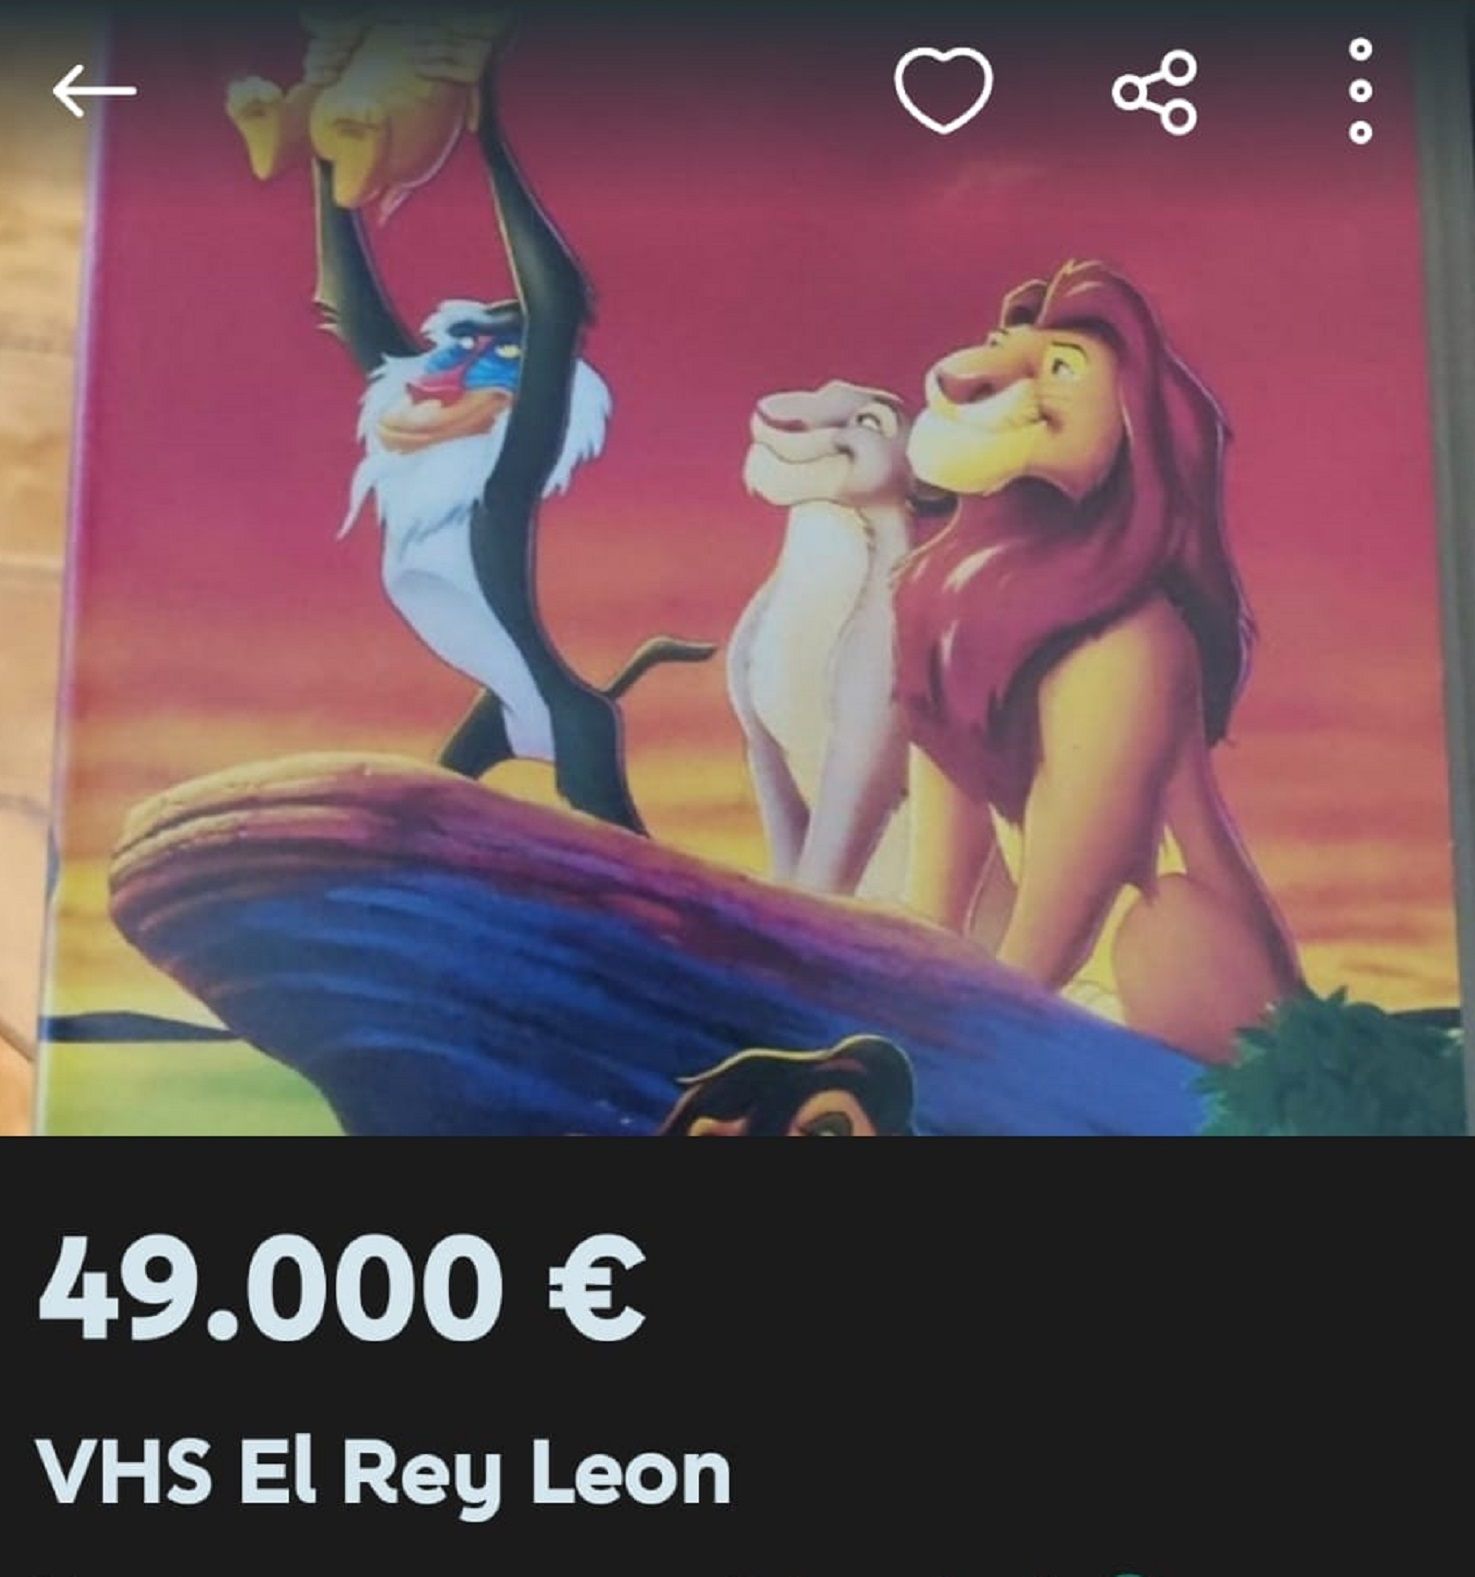 'El Rey León' a la venta en Wallapop / El Caso